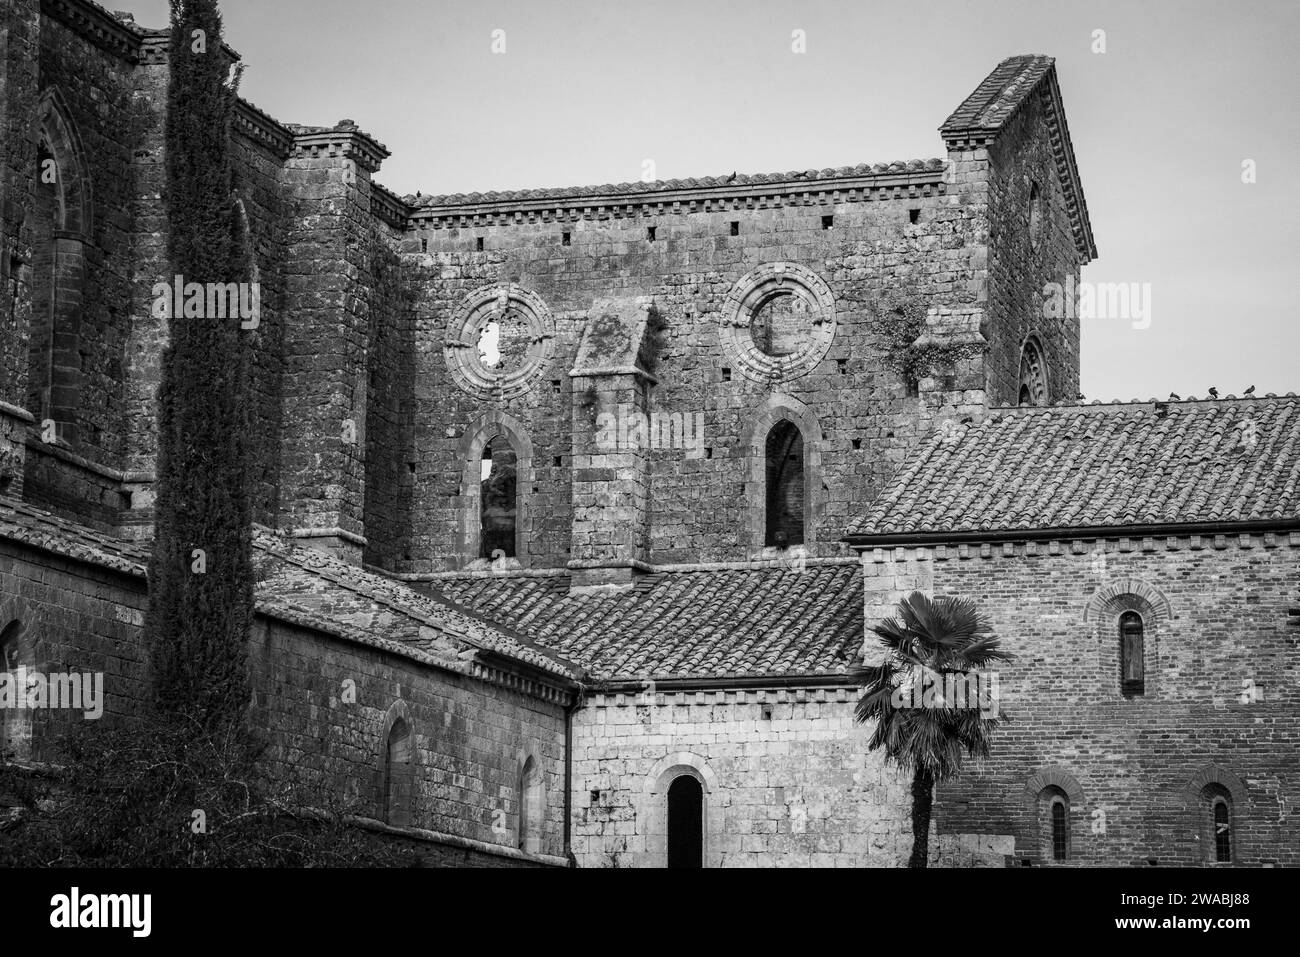 Ruin of the medieval Cistercian monastery San Galgano in the Tuscany, Italy Stock Photo